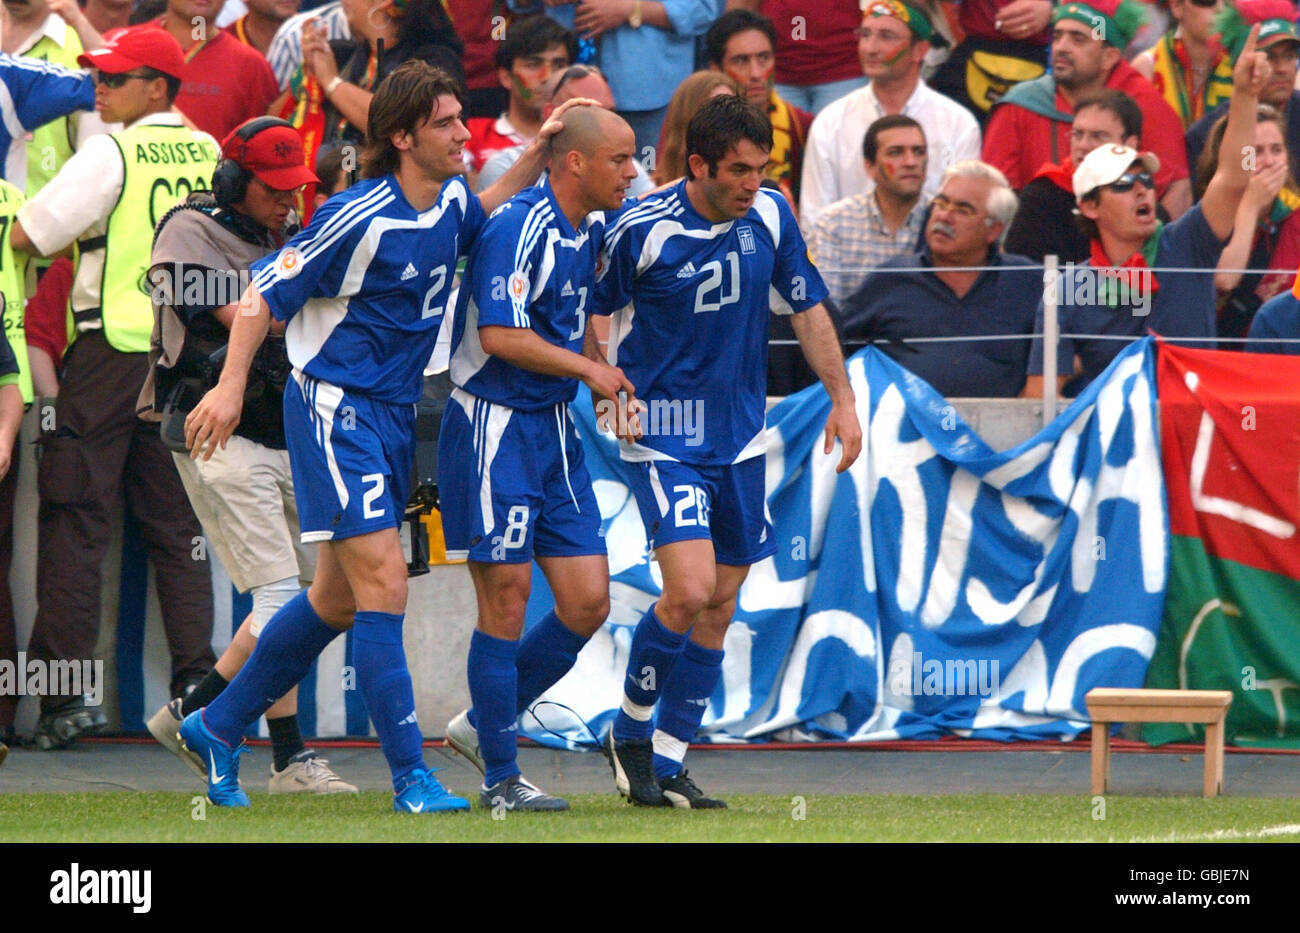 Greece's Georgios Karagounis celebrates scoring the opening goal with teammates Georgios Seitaridis (l) and Stylianos Giannakopoulos (c) Stock Photo